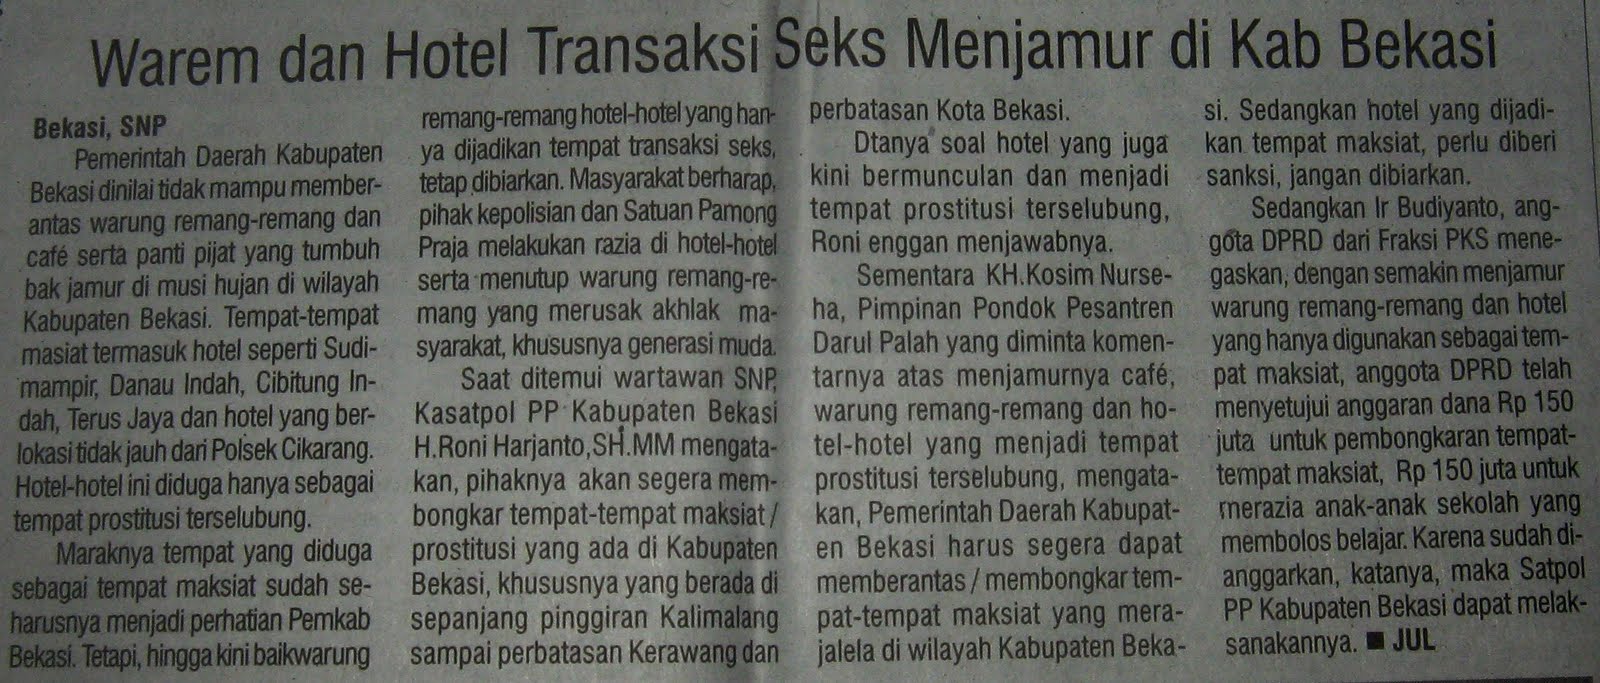 Warem dan Hotel Transaksi Seks Menjamur di Kab Bekasi ~ REALITA 